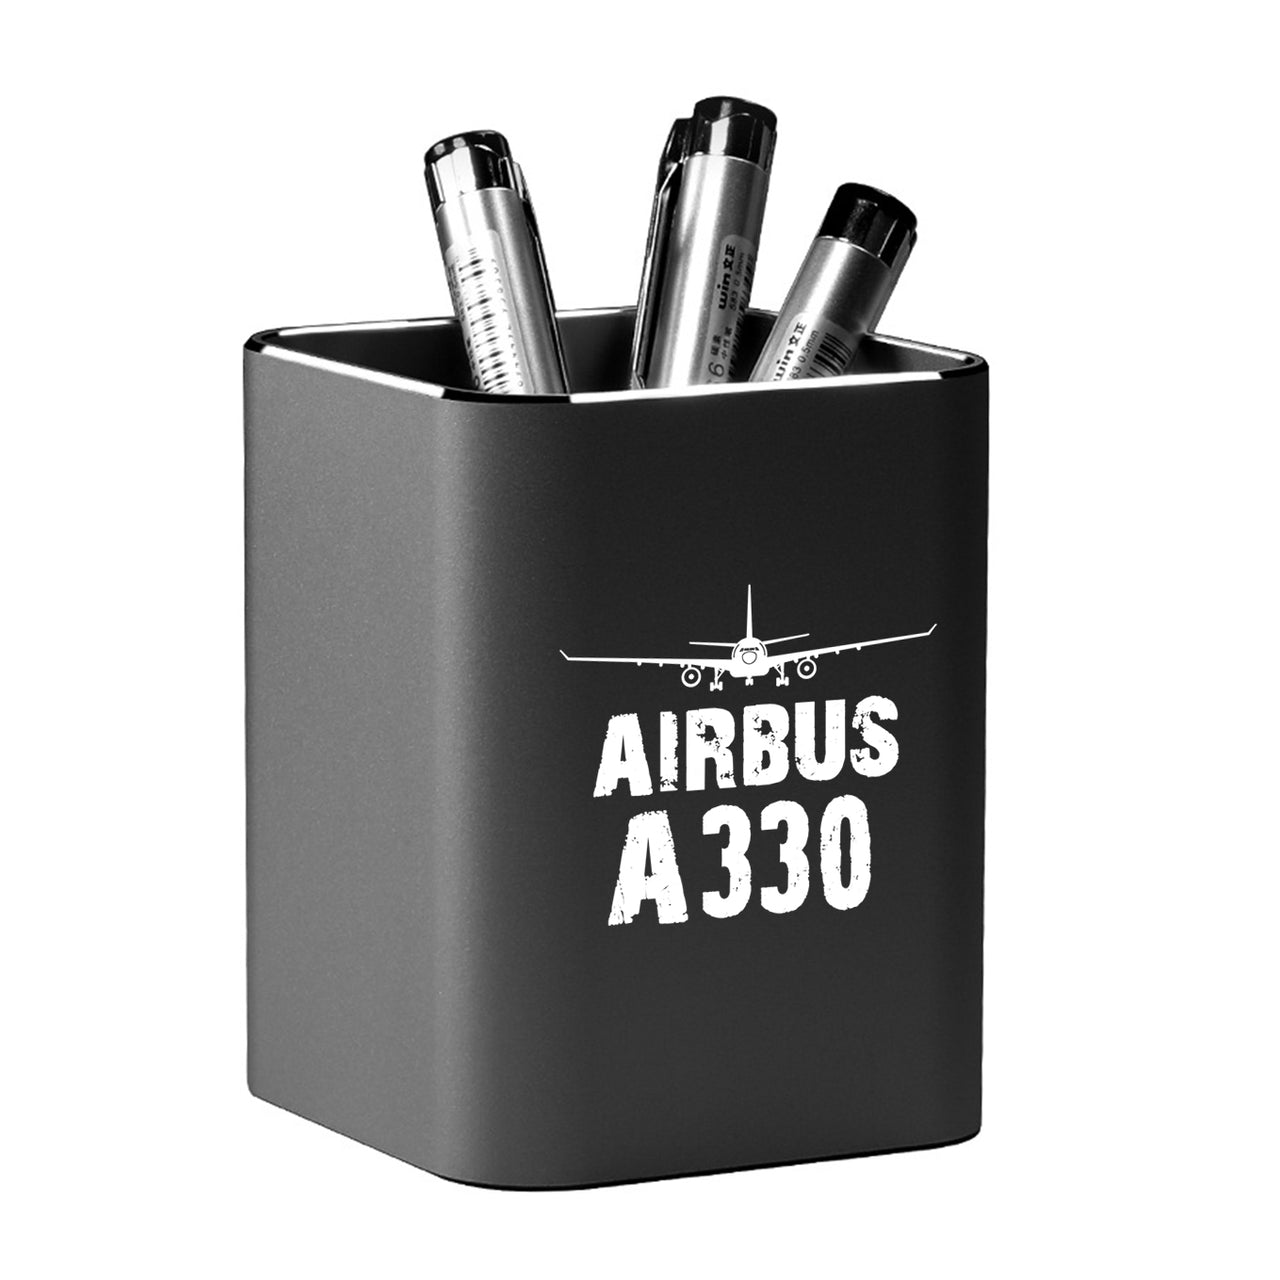 Airbus A330 & Plane Designed Aluminium Alloy Pen Holders